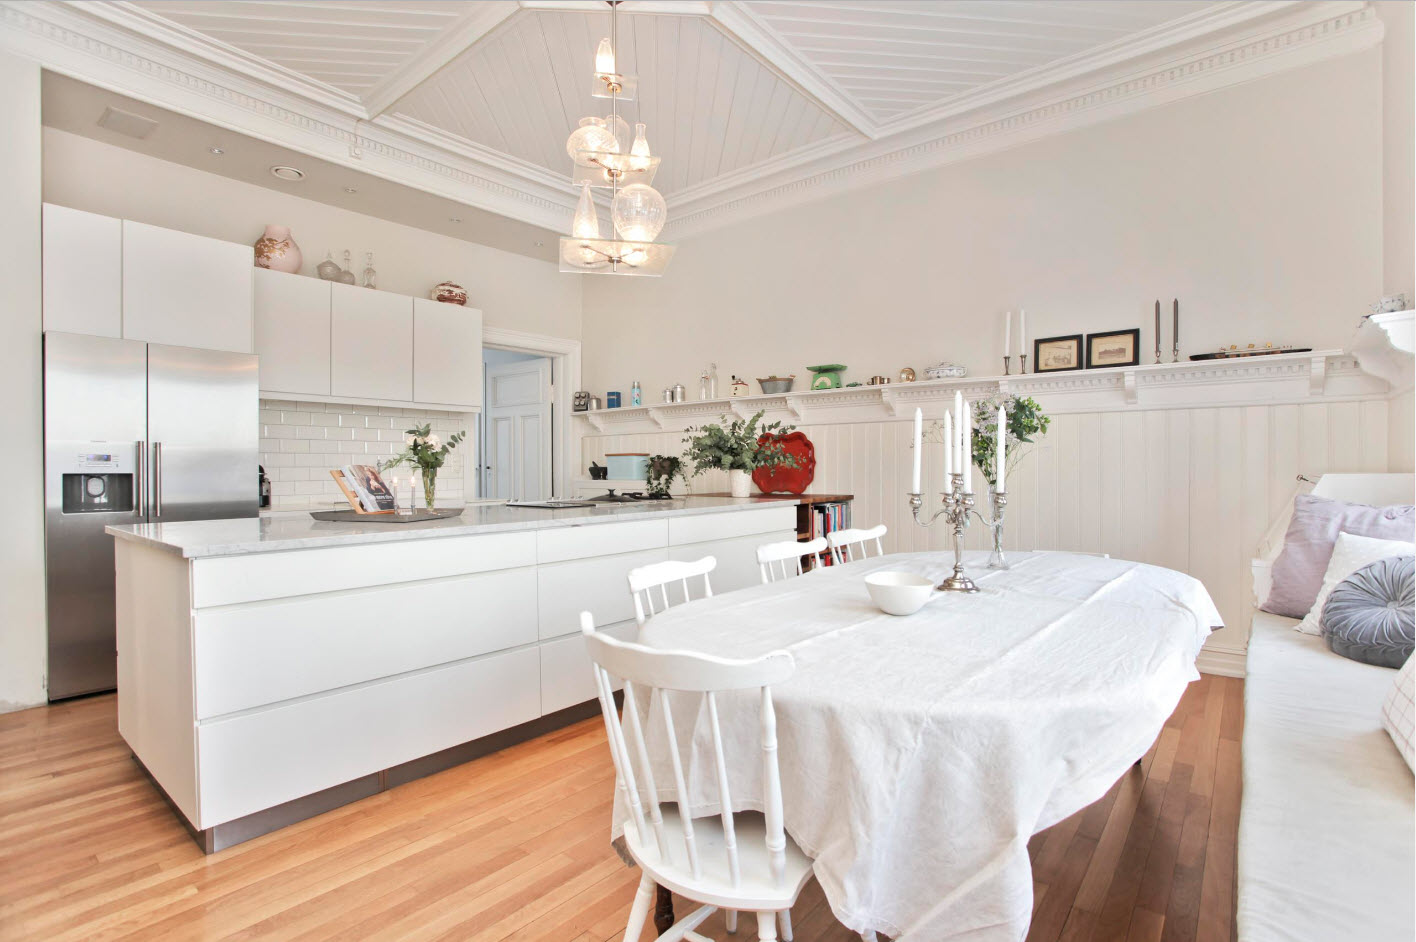 Cozinha-sala de jantar em tons de branco